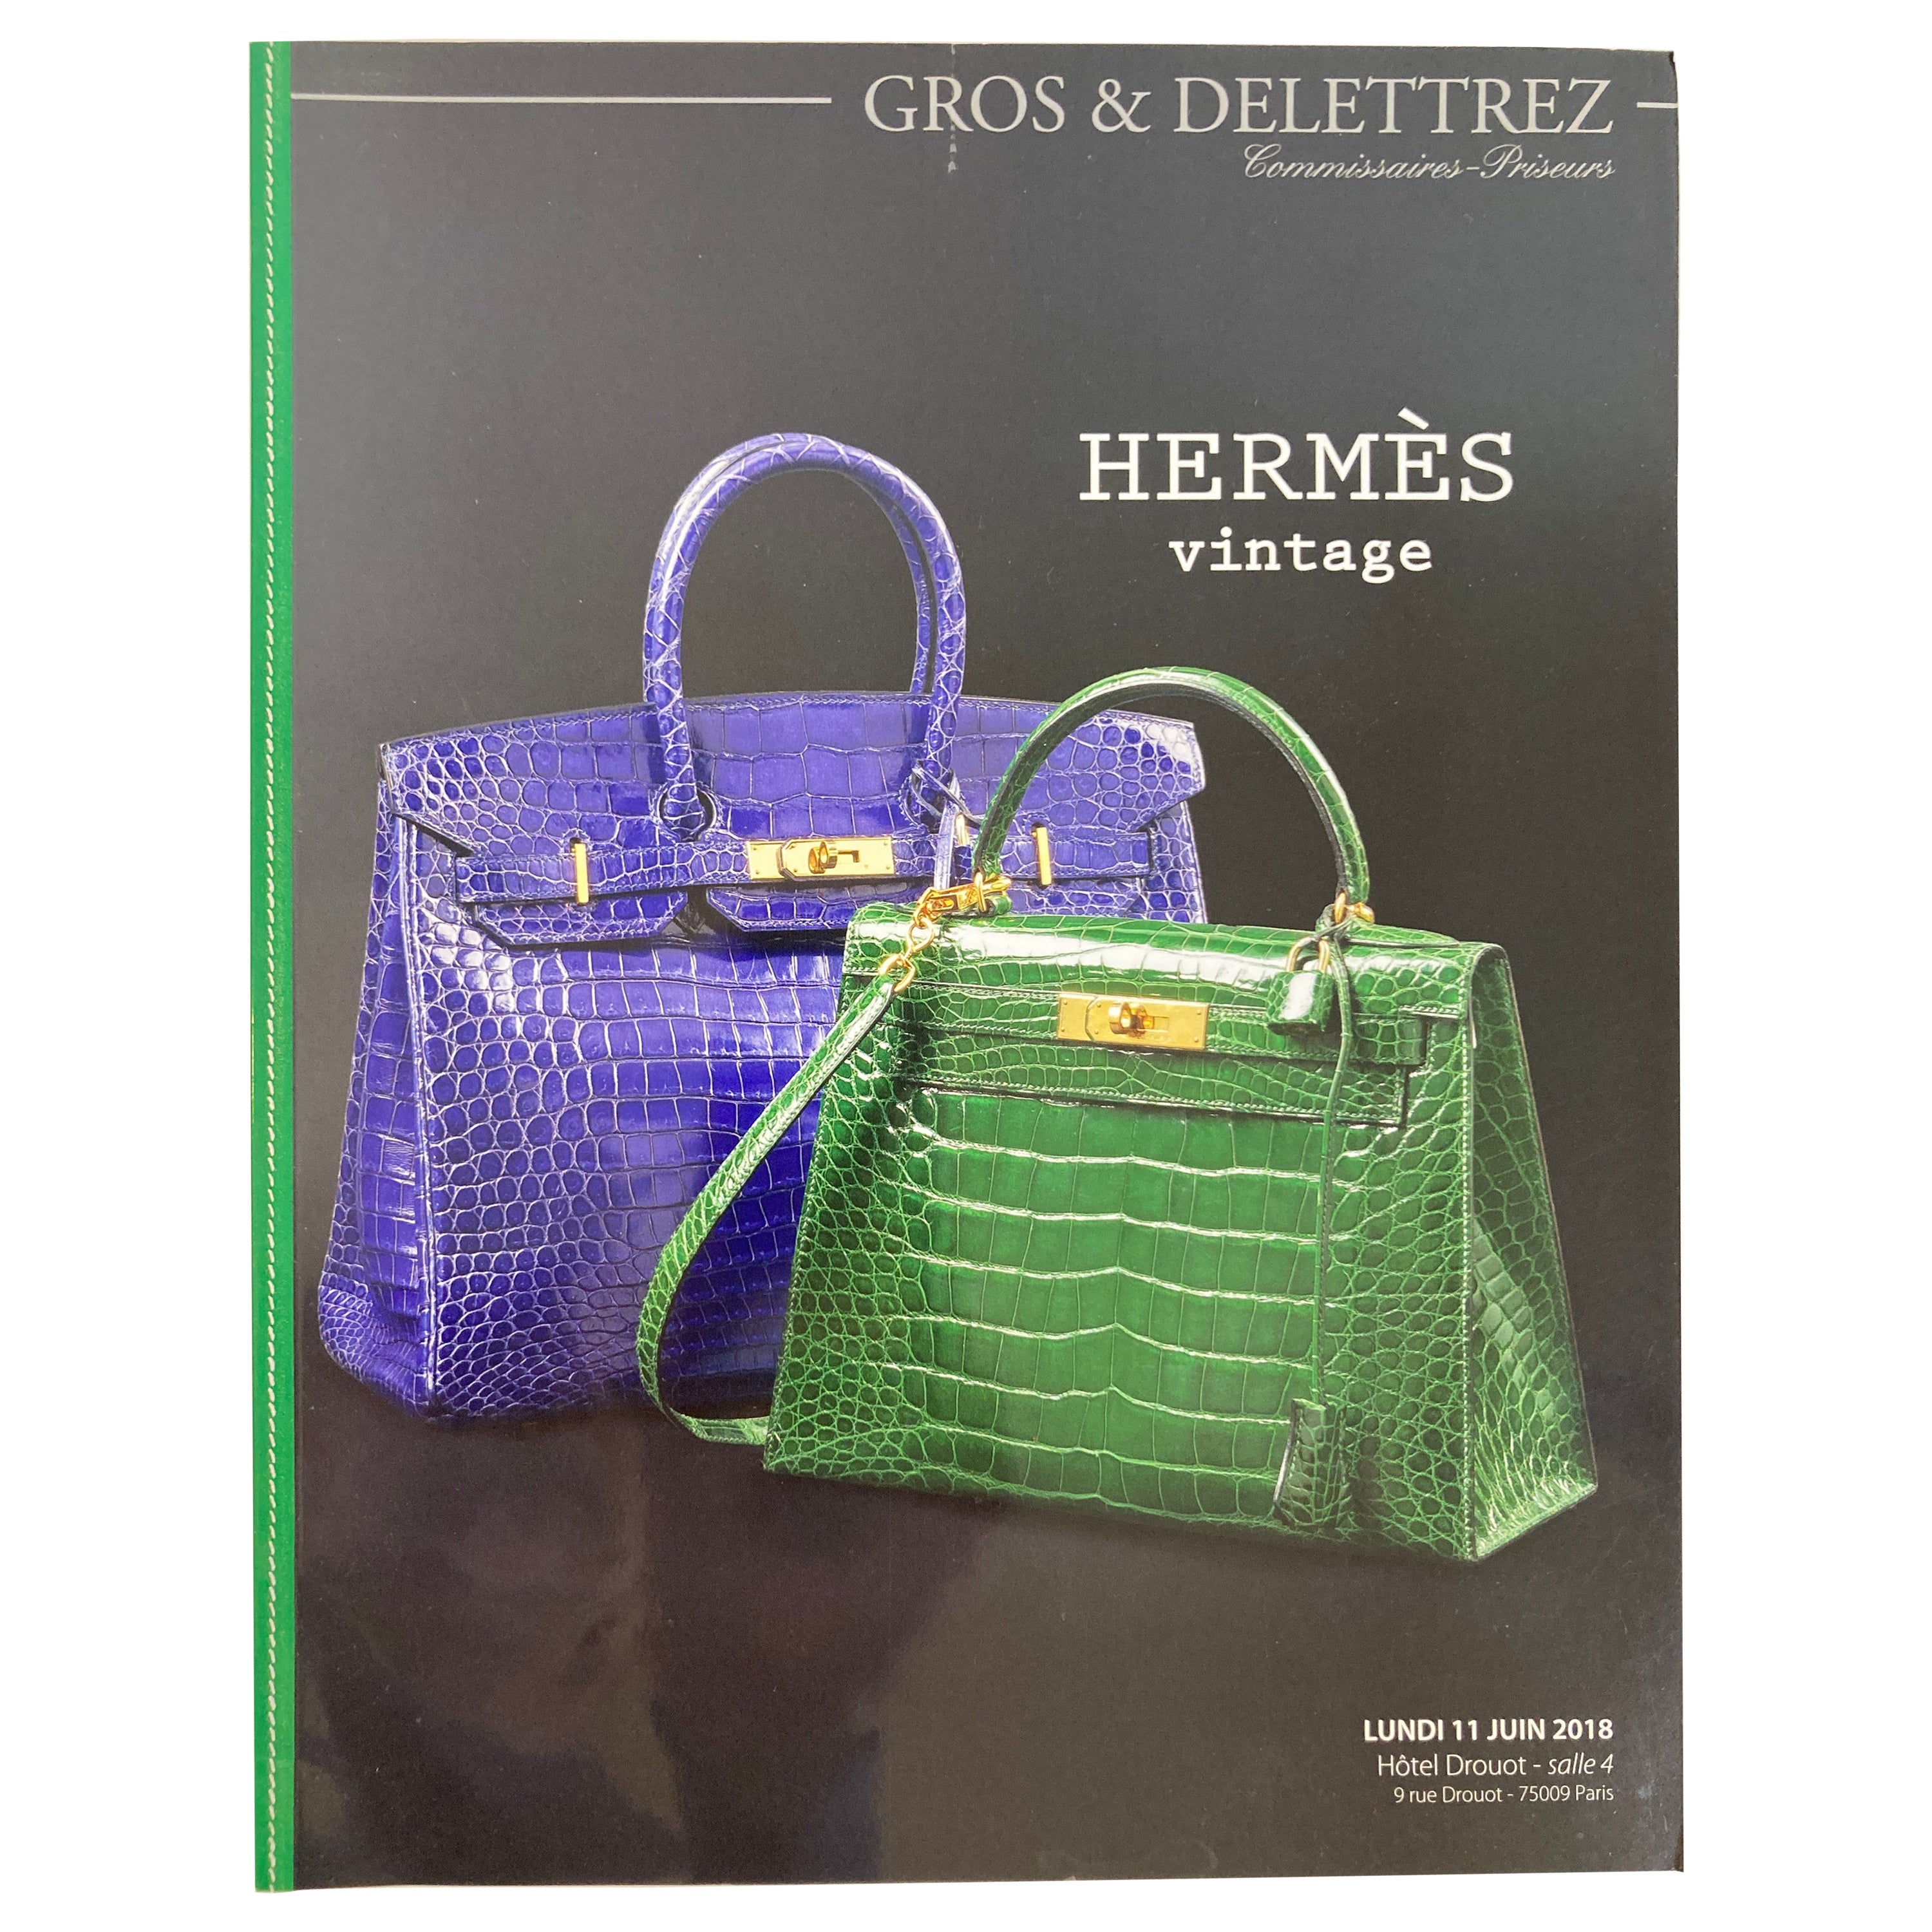 Hermes Vintage Paris Auction Catalog 2018 Published by Gros & Delettrez